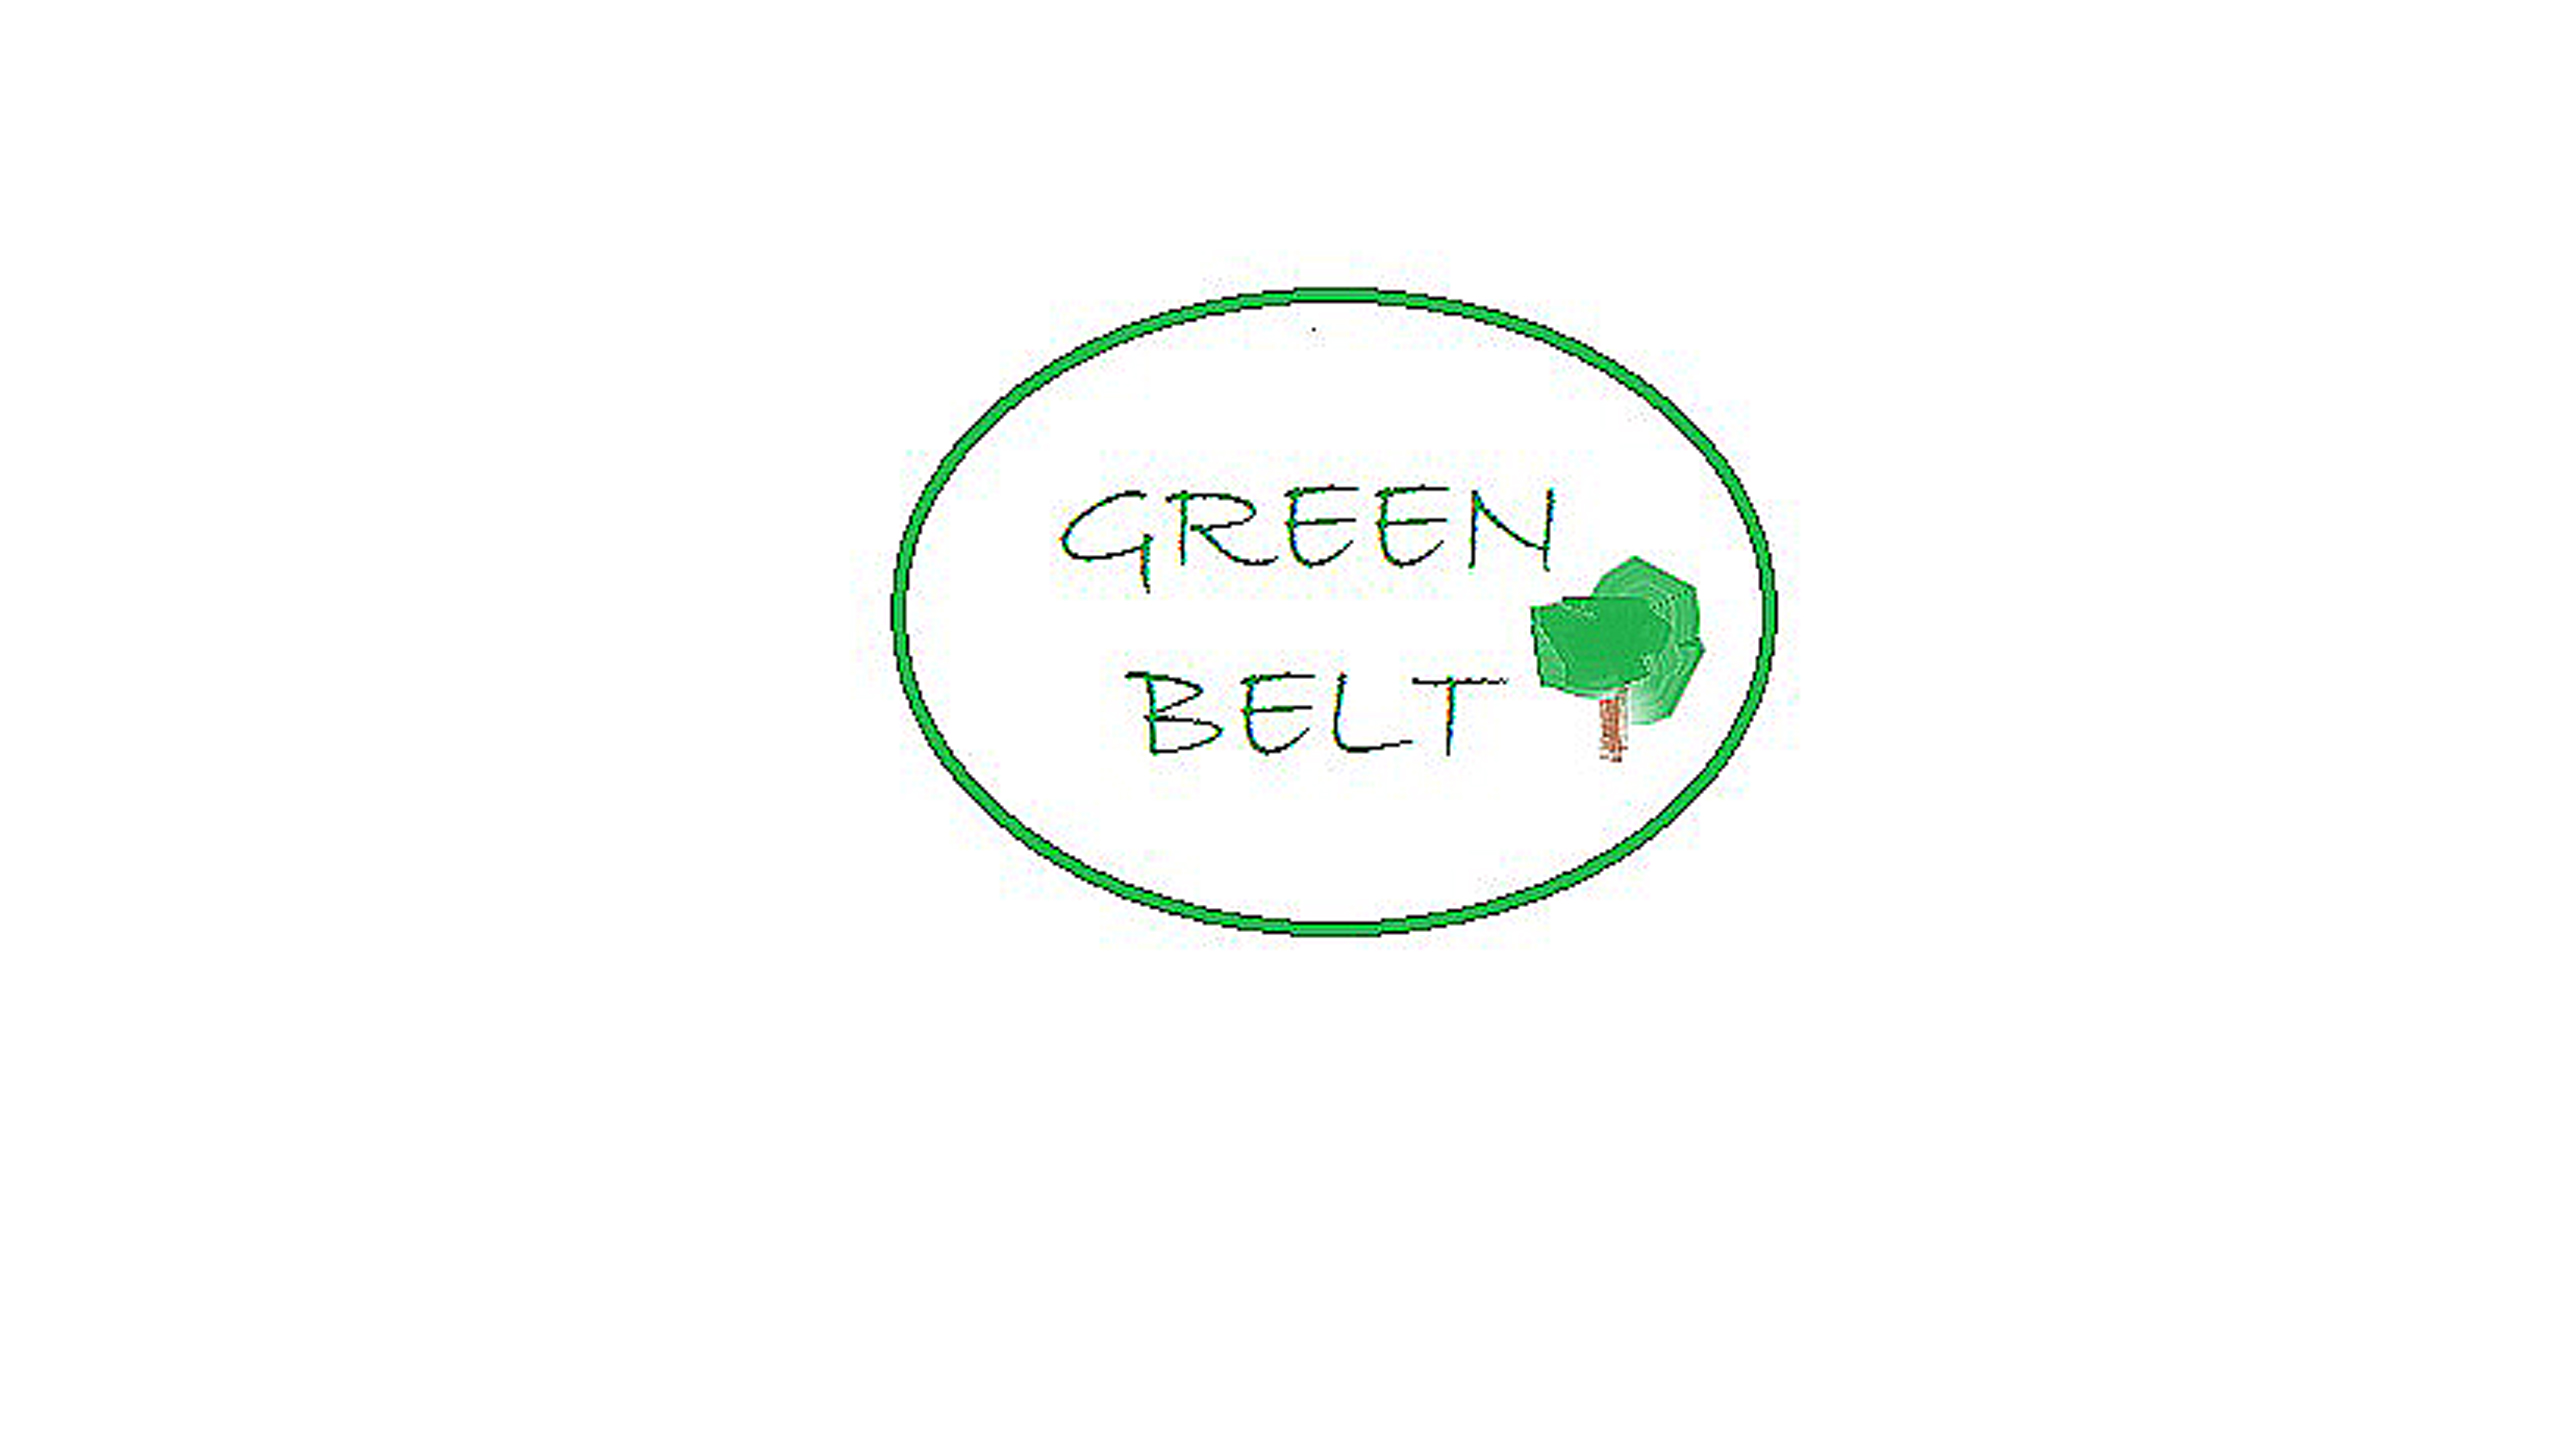 Green belt